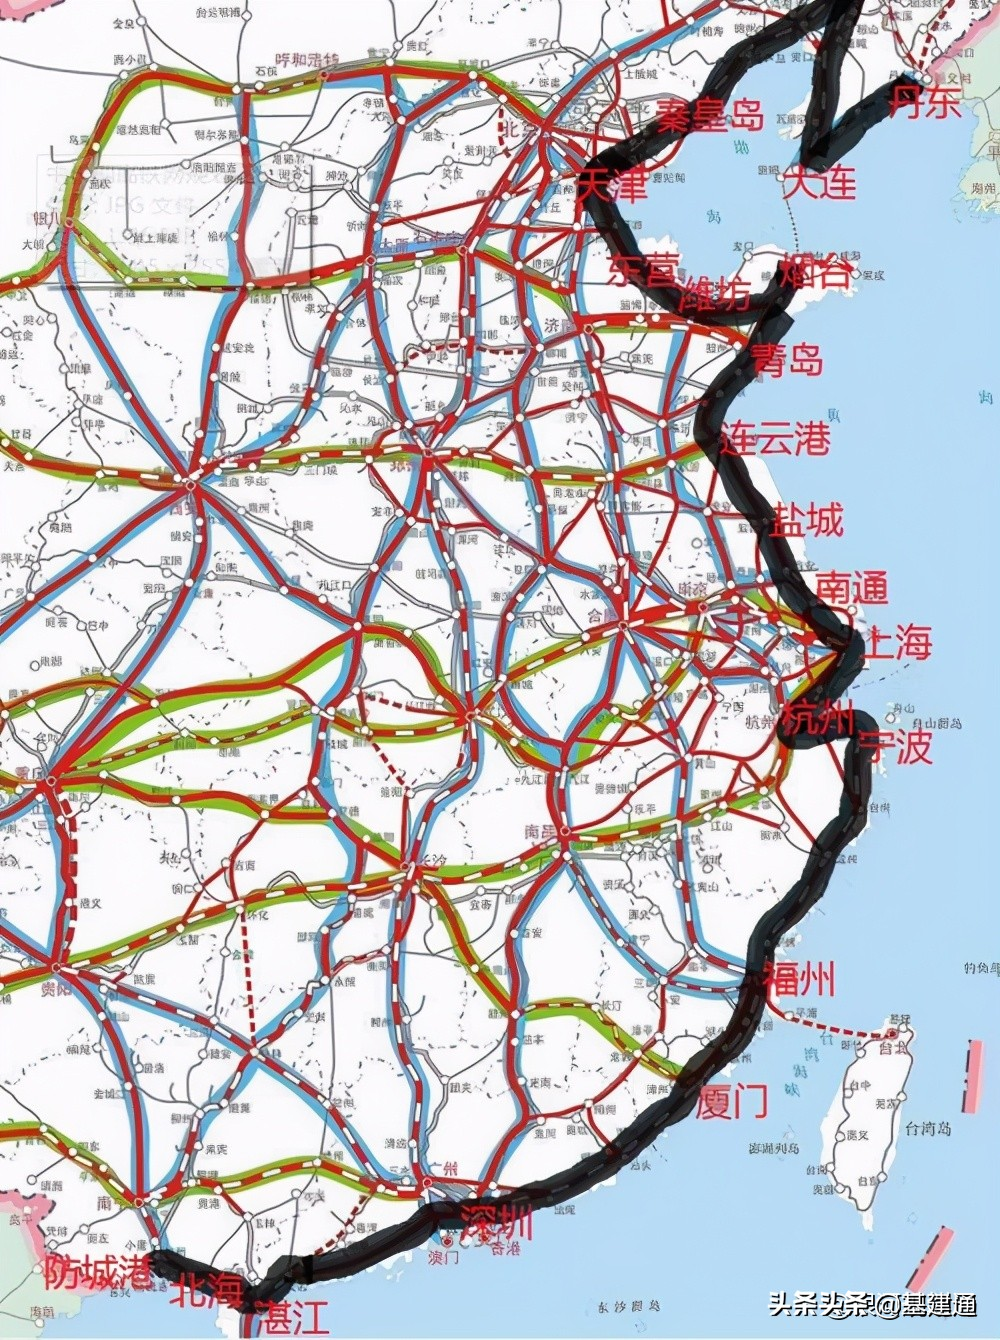 上海到宁波有多少公里,全长5090公里